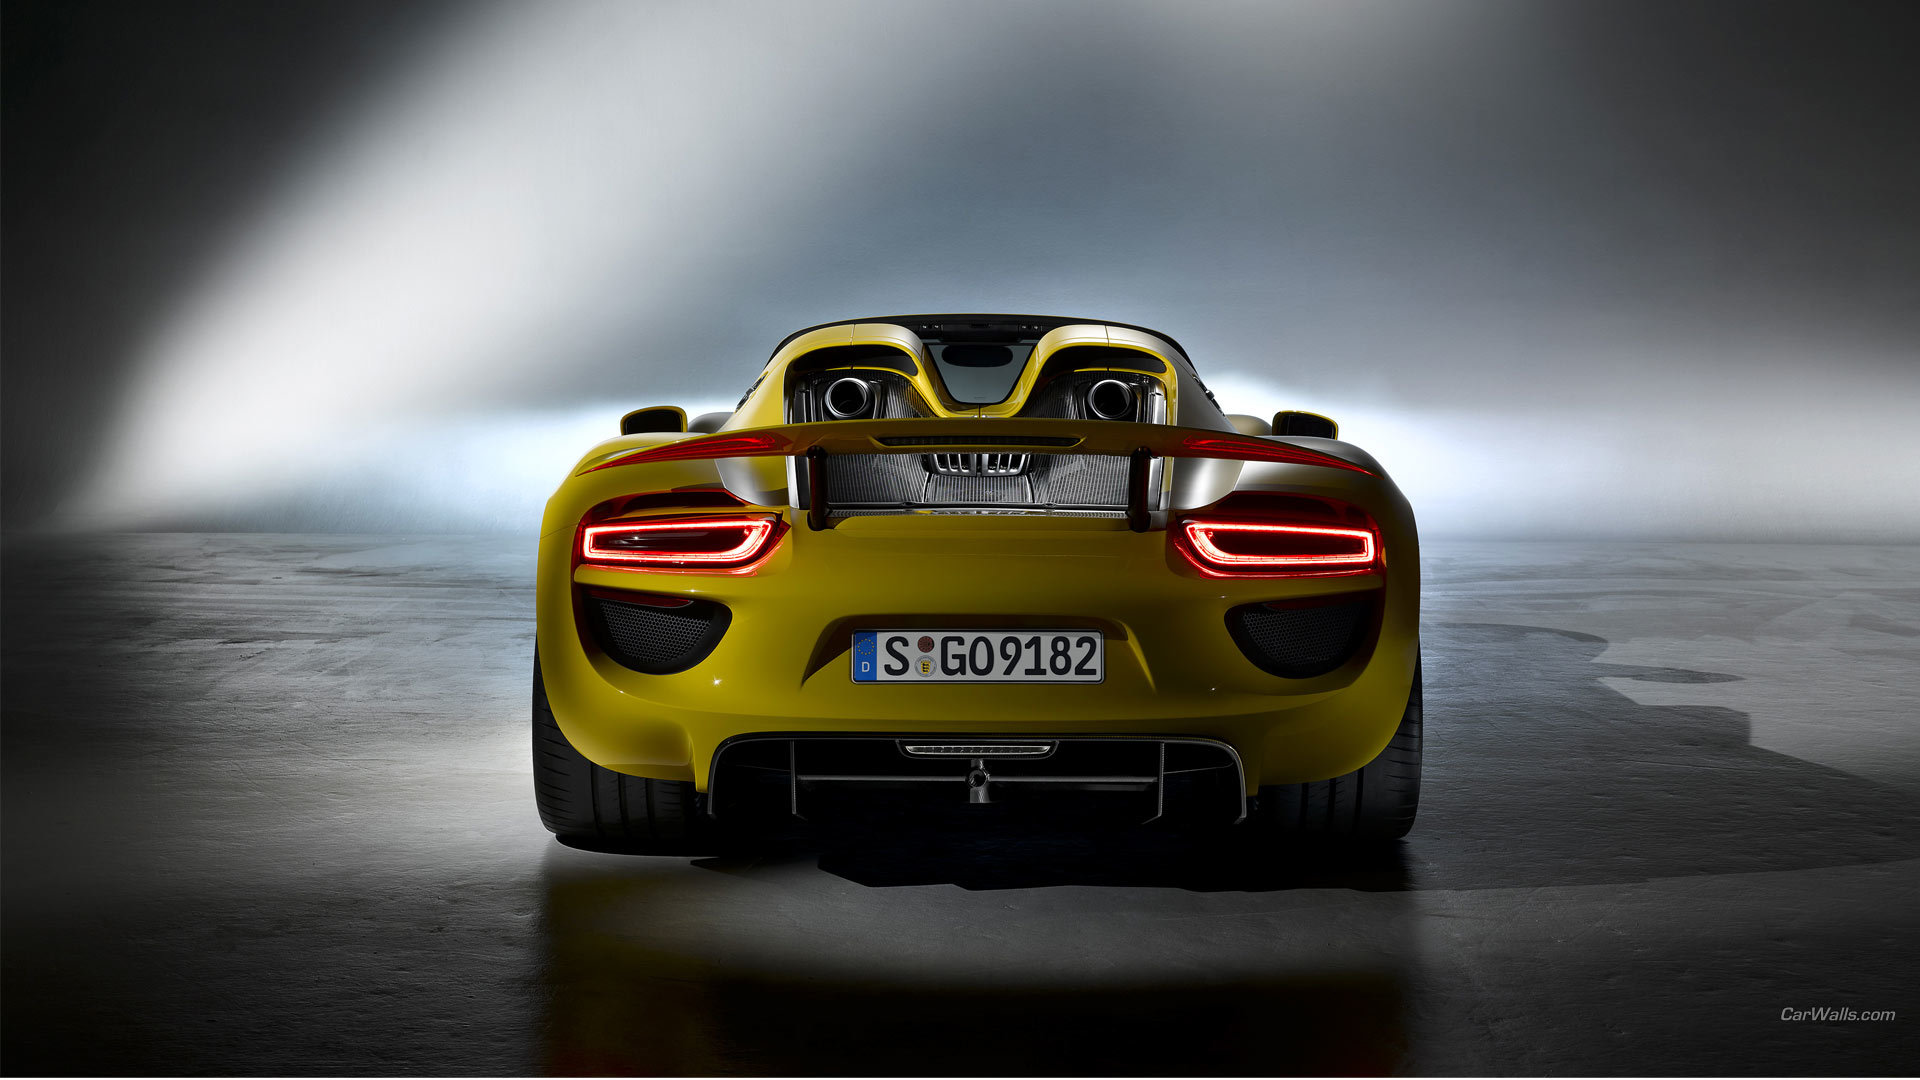 Download 1080p Porsche 918 Spyder desktop background ID:188604 for free